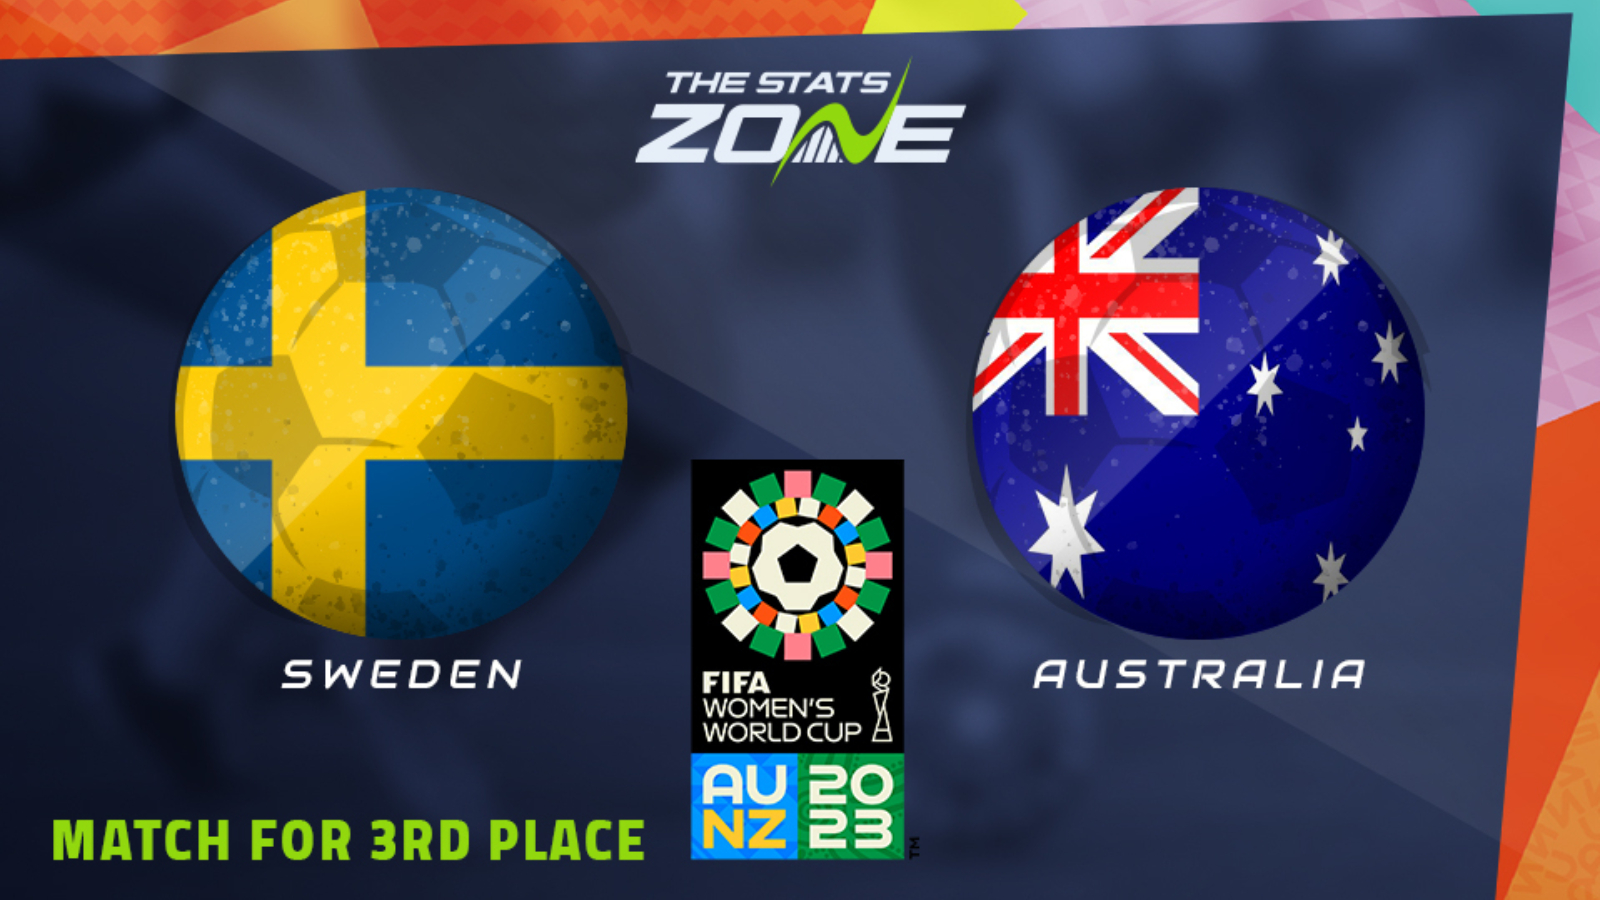 Photo: australia vs sweden prediction